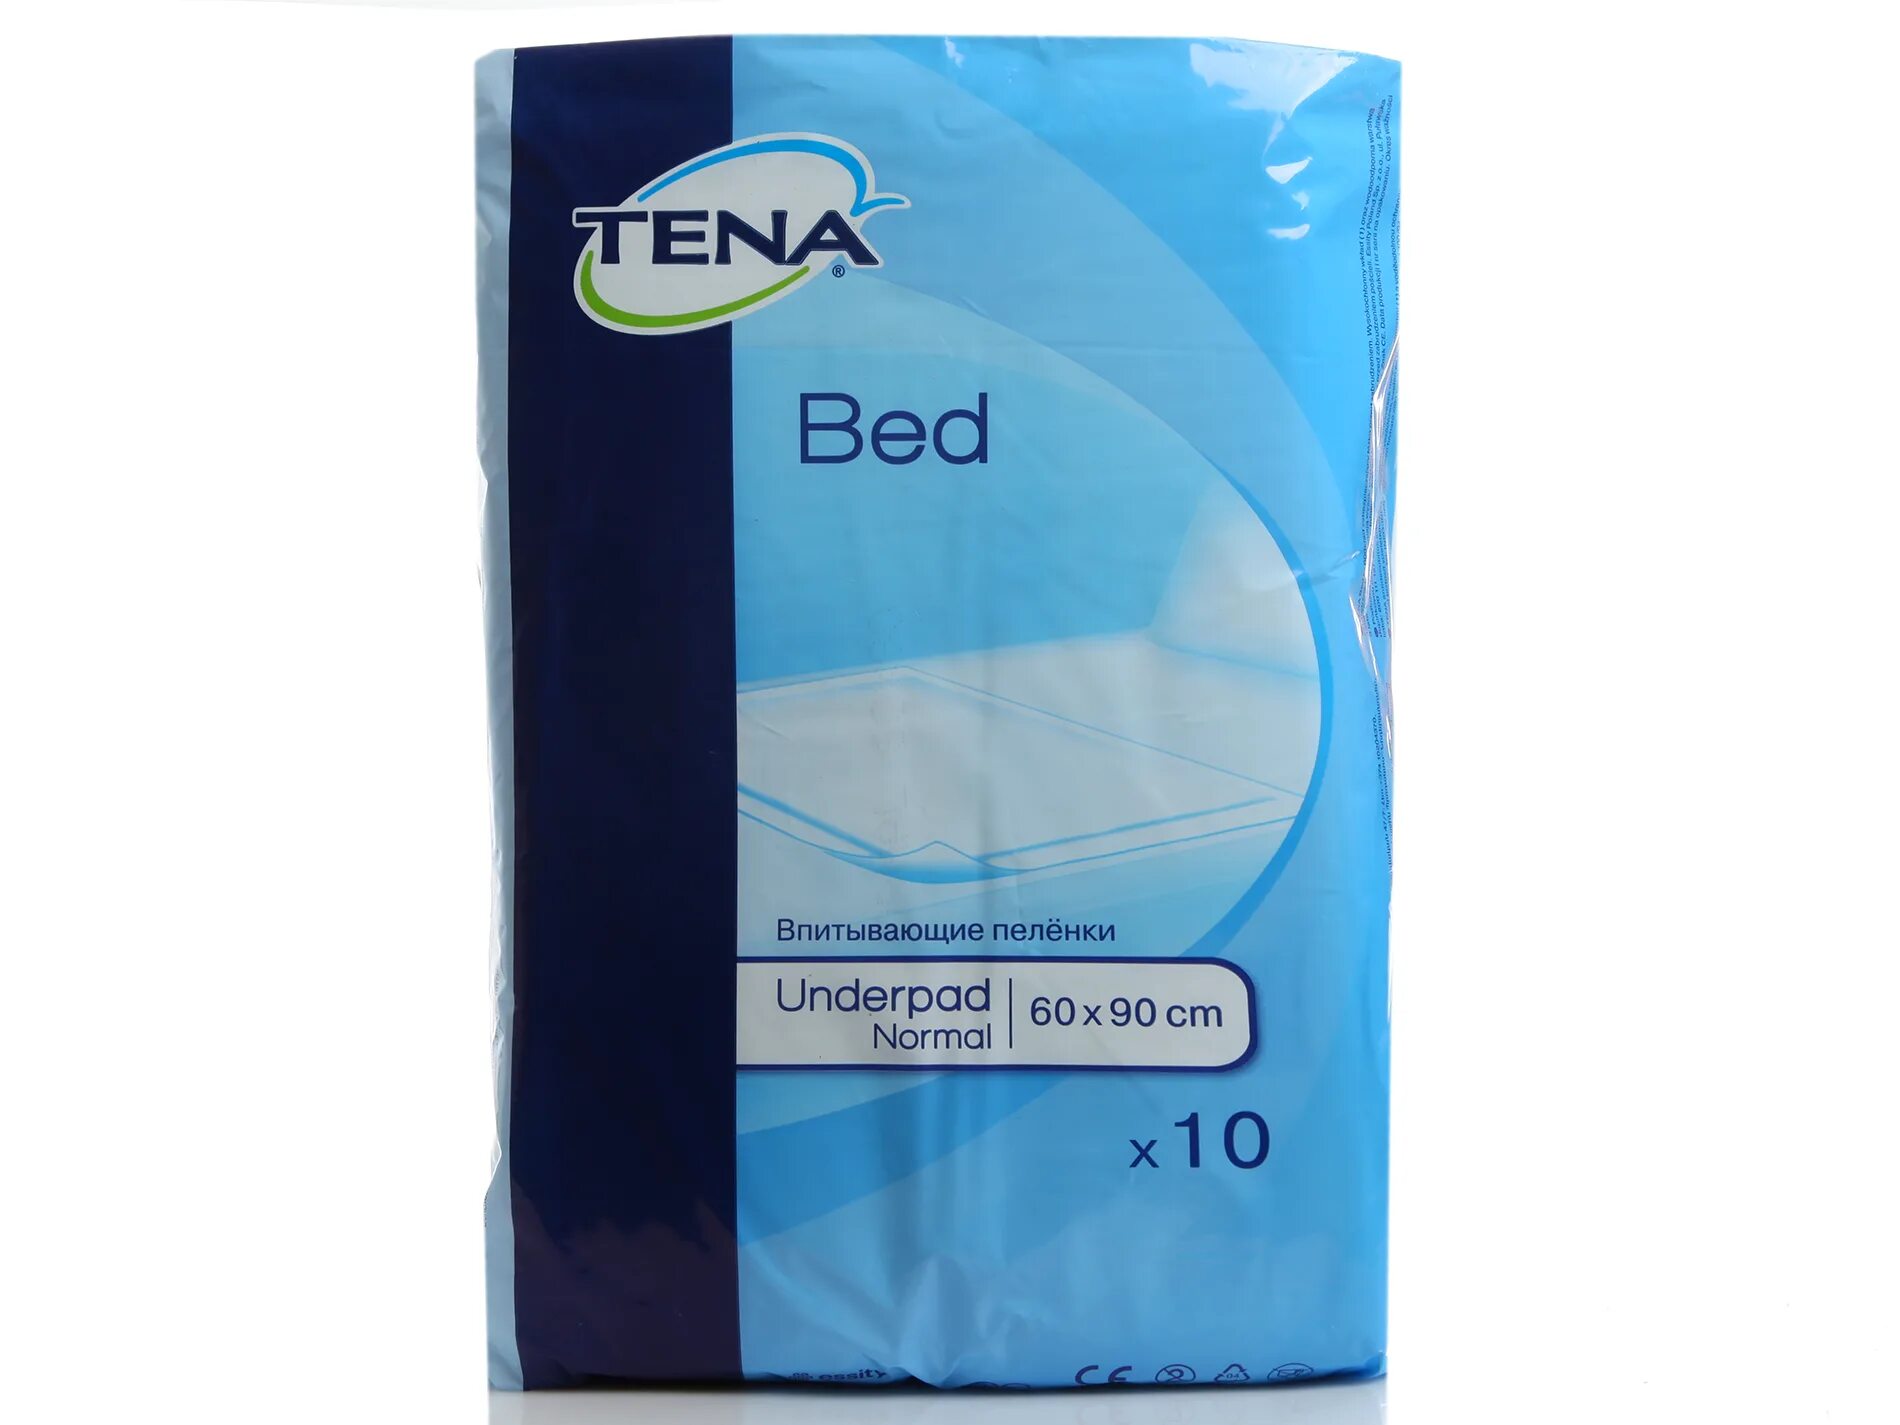 Tena Bed Underpad normal 60 90. Пеленки для лежачих больных 60х90 Seni. Простыни сени 60х60 30. Пелёнки одноразовые 60х90 для лежачих больных.